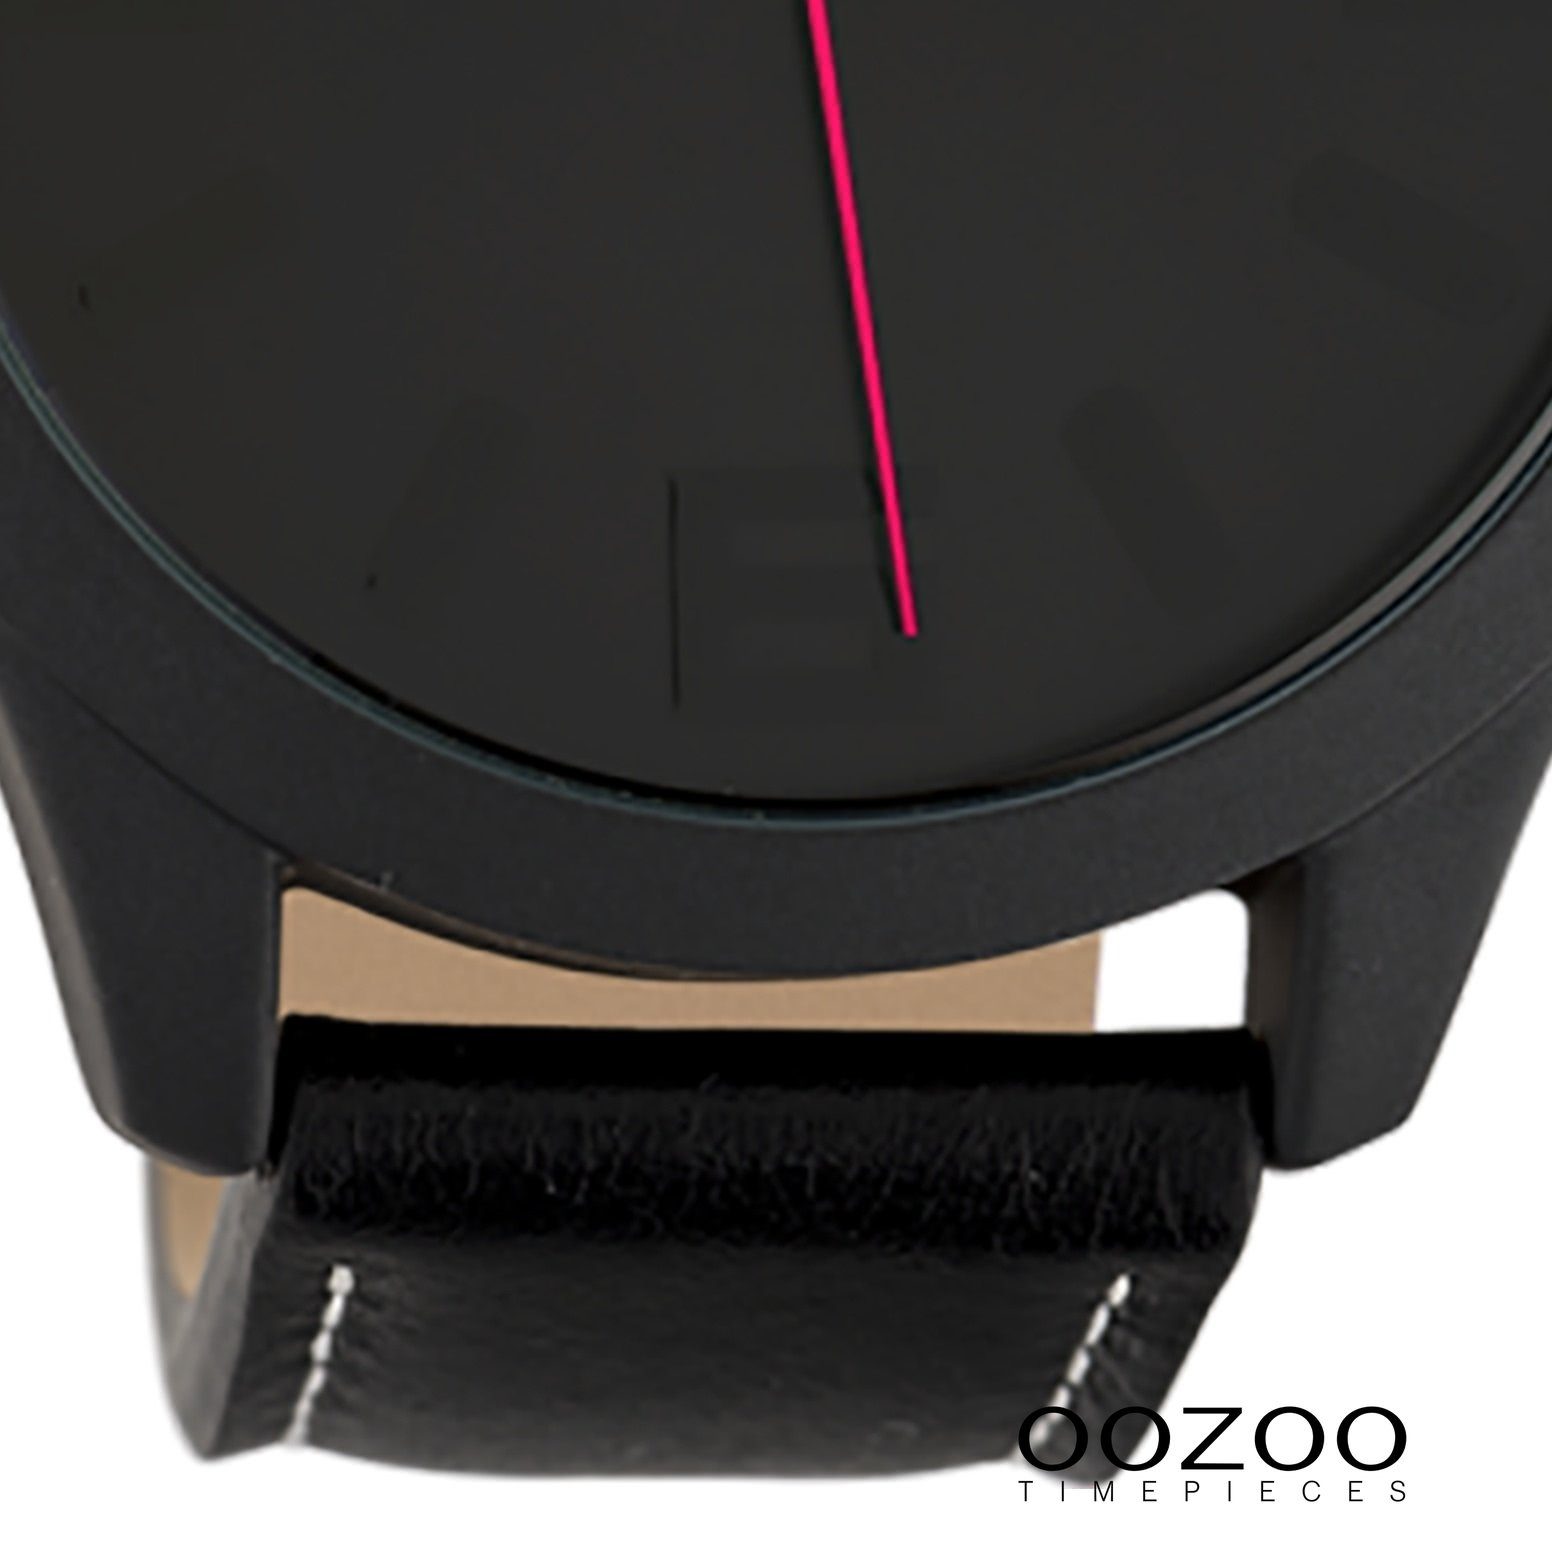 OOZOO Quarzuhr Oozoo groß Lederarmband, Fashion-Style 45mm) Damenuhr schwarz, Armbanduhr Damen rund, (ca